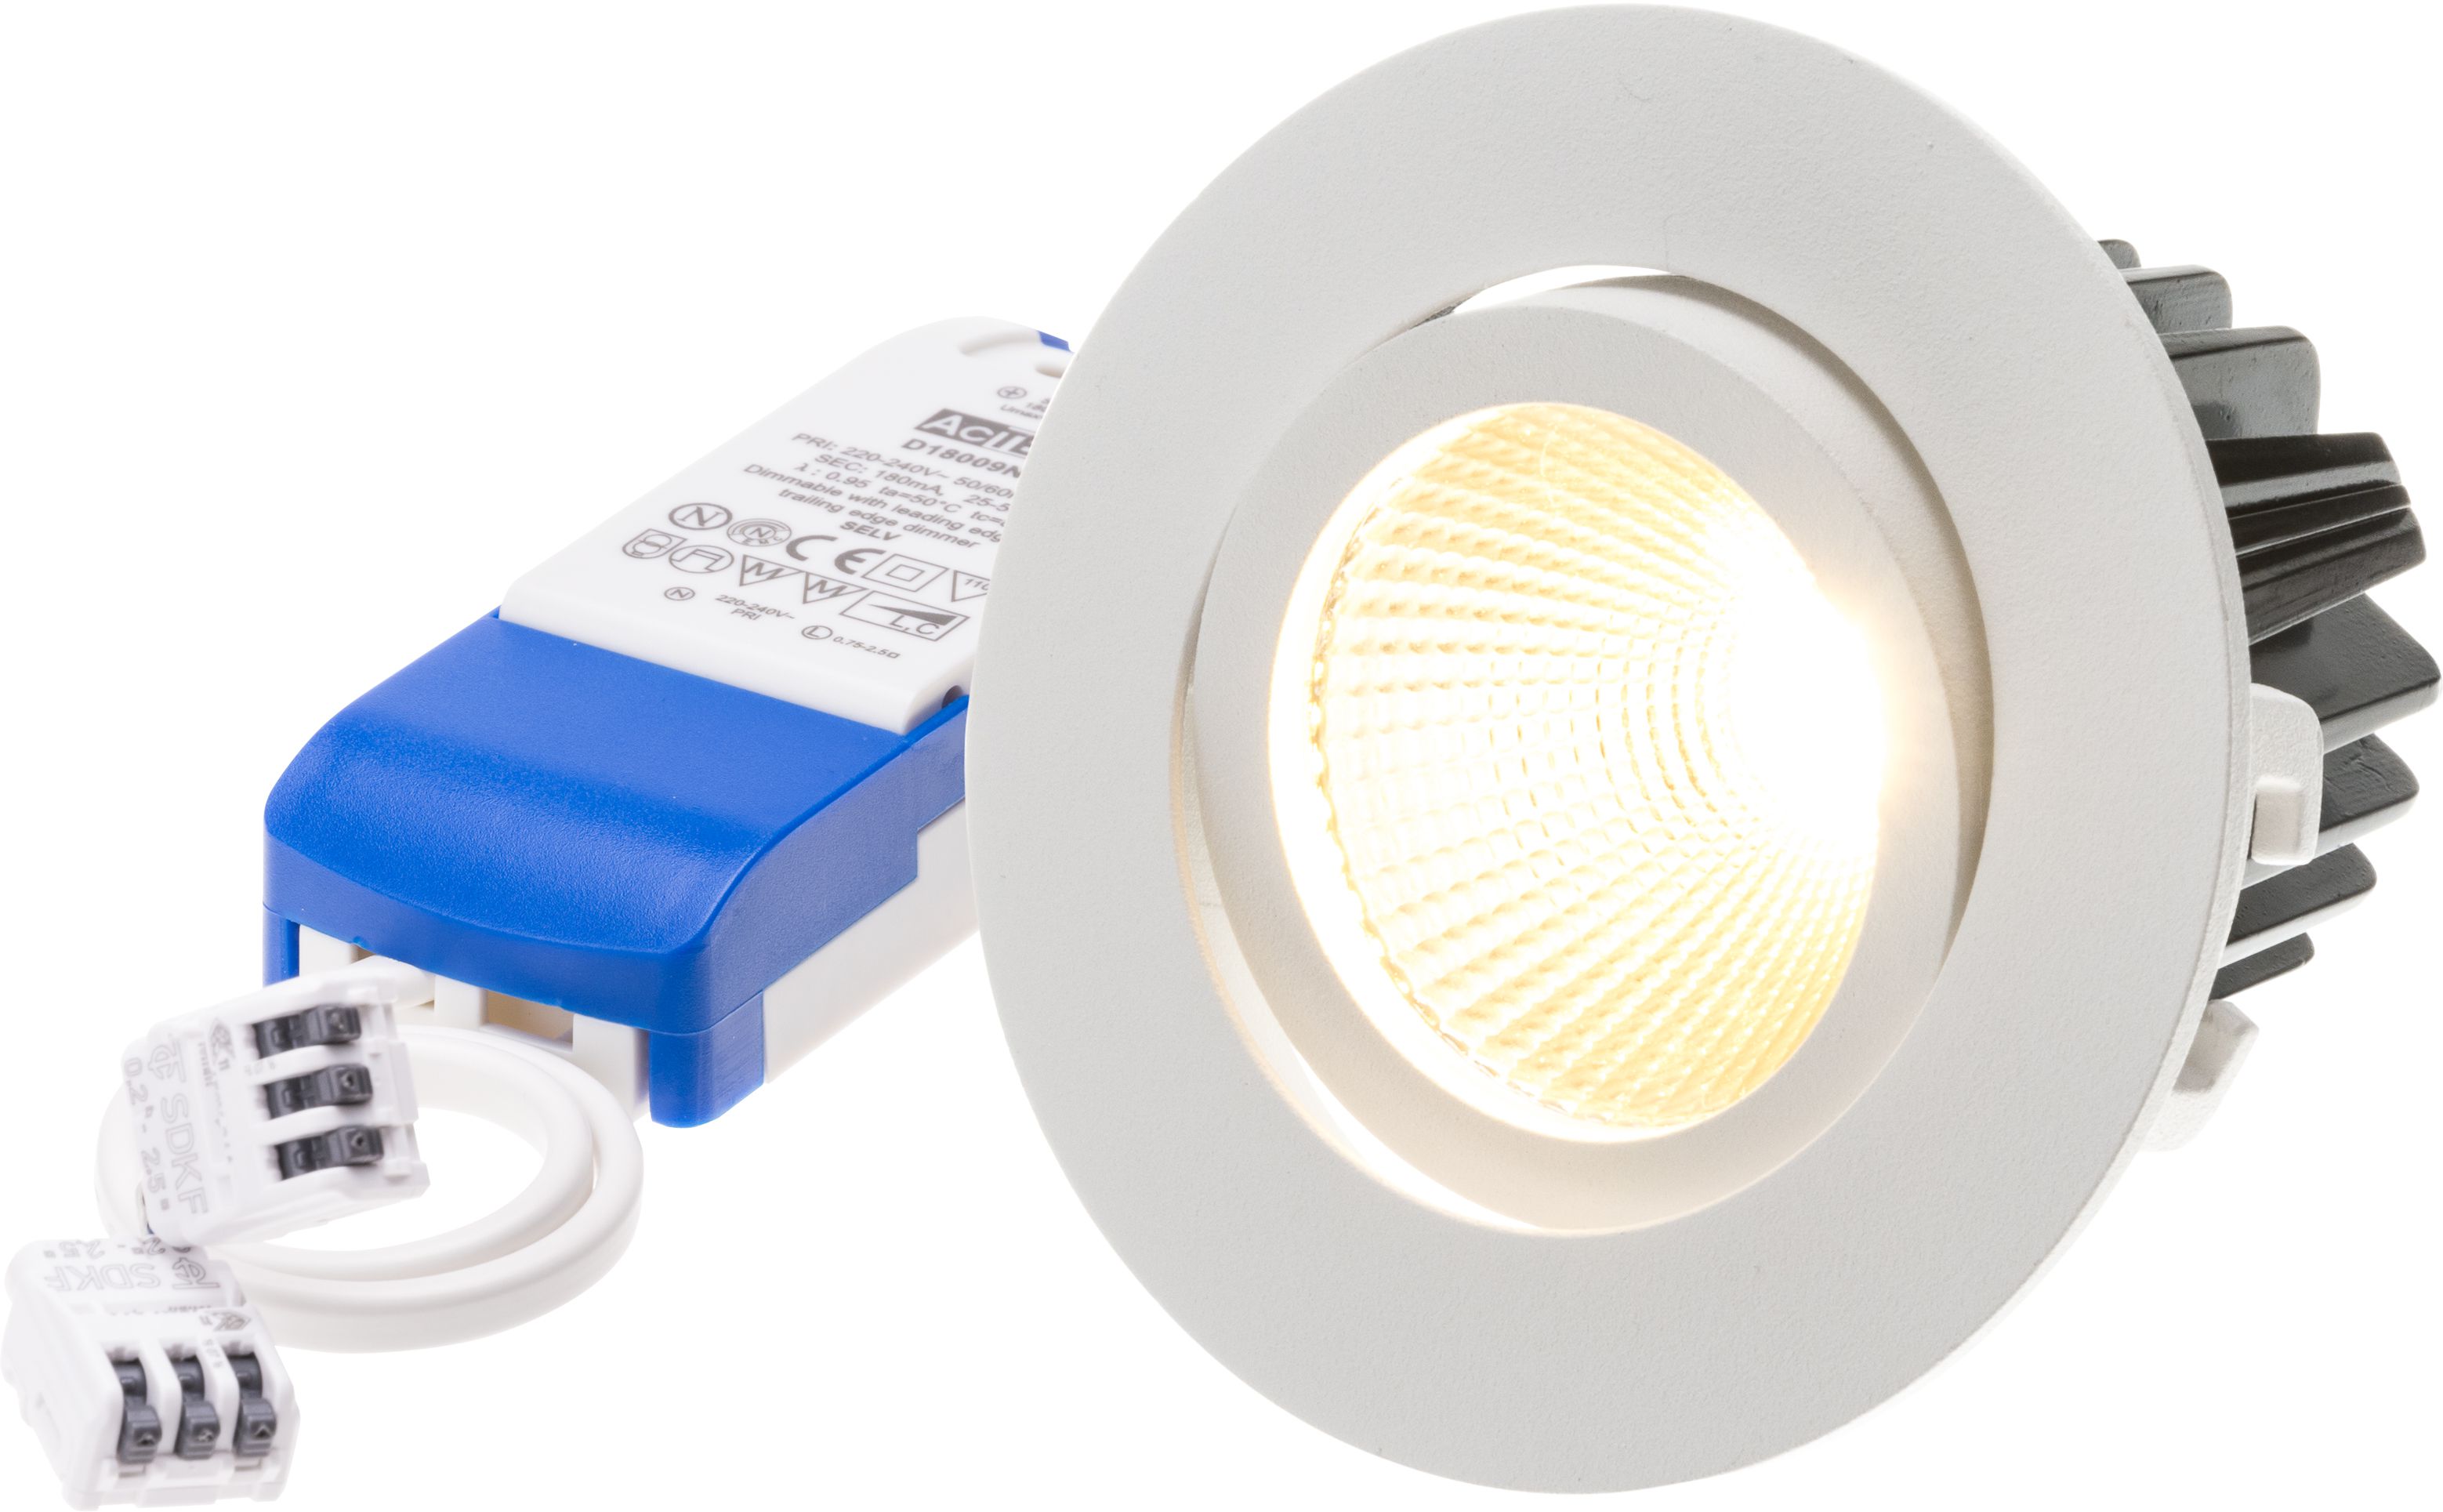 LED-Einbauspot "DISC" weiss, 36°, 8W